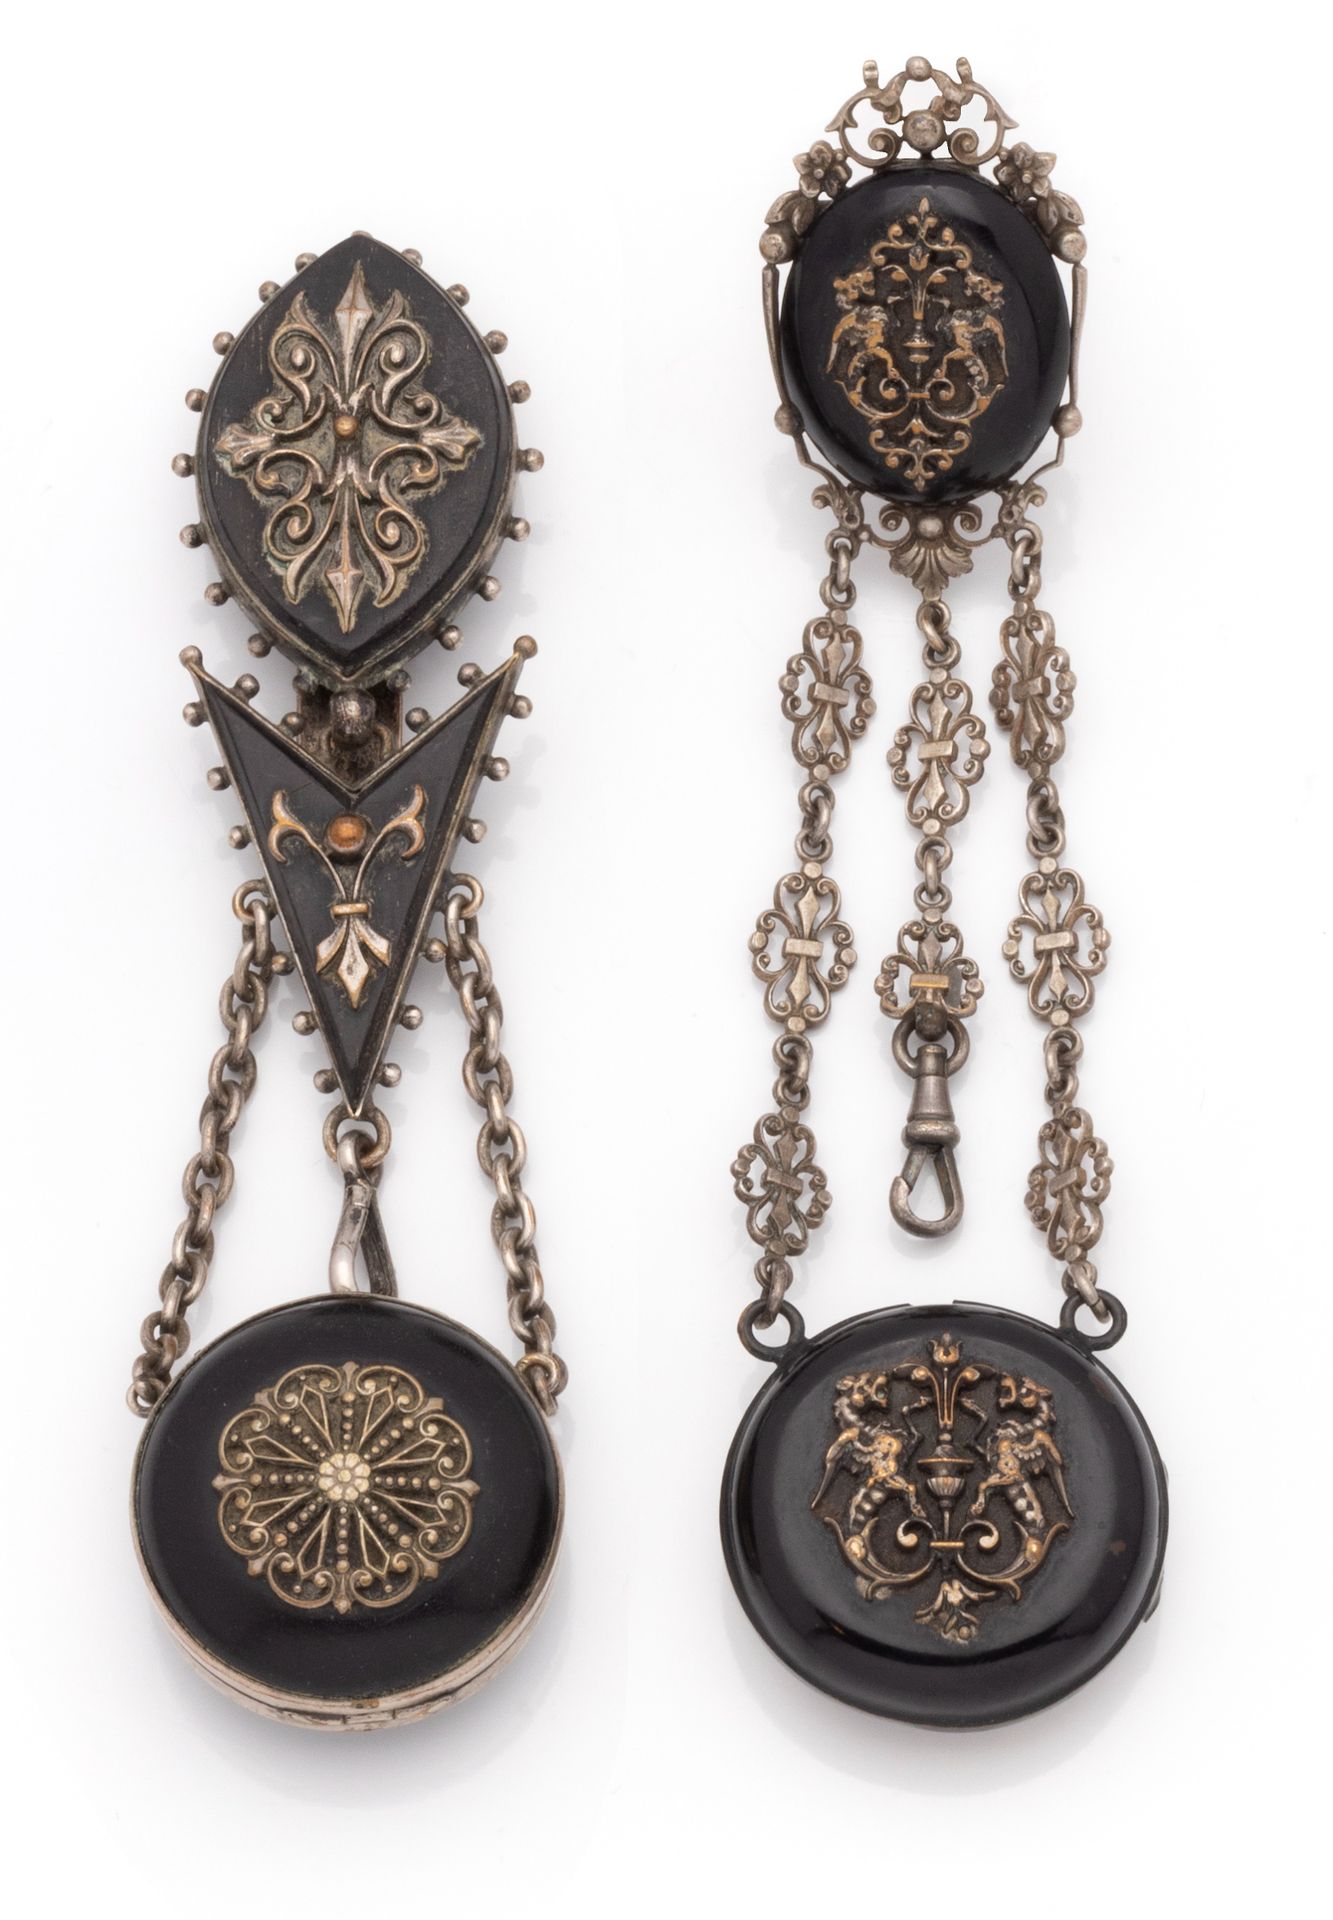 Null 一套两个金属夏特莱恩（不含手表），椭圆形元素涂有黑色或发黑的木头漆，链子上装饰有花朵和大理石。

高度：每个15厘米